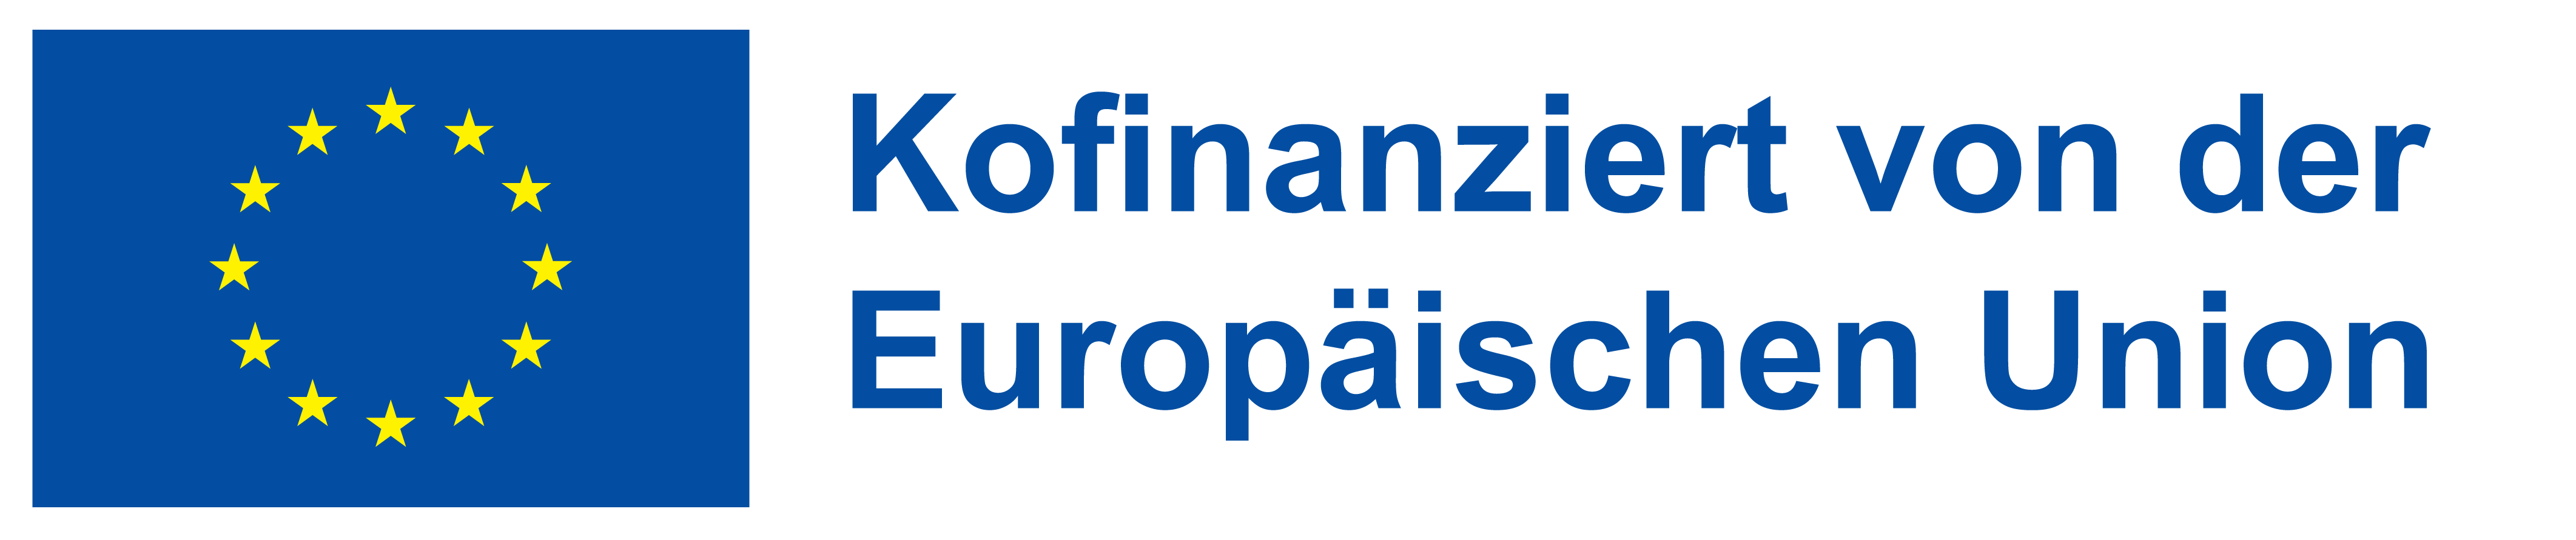 Logo zu Konfinanziert von der Europäischen Union